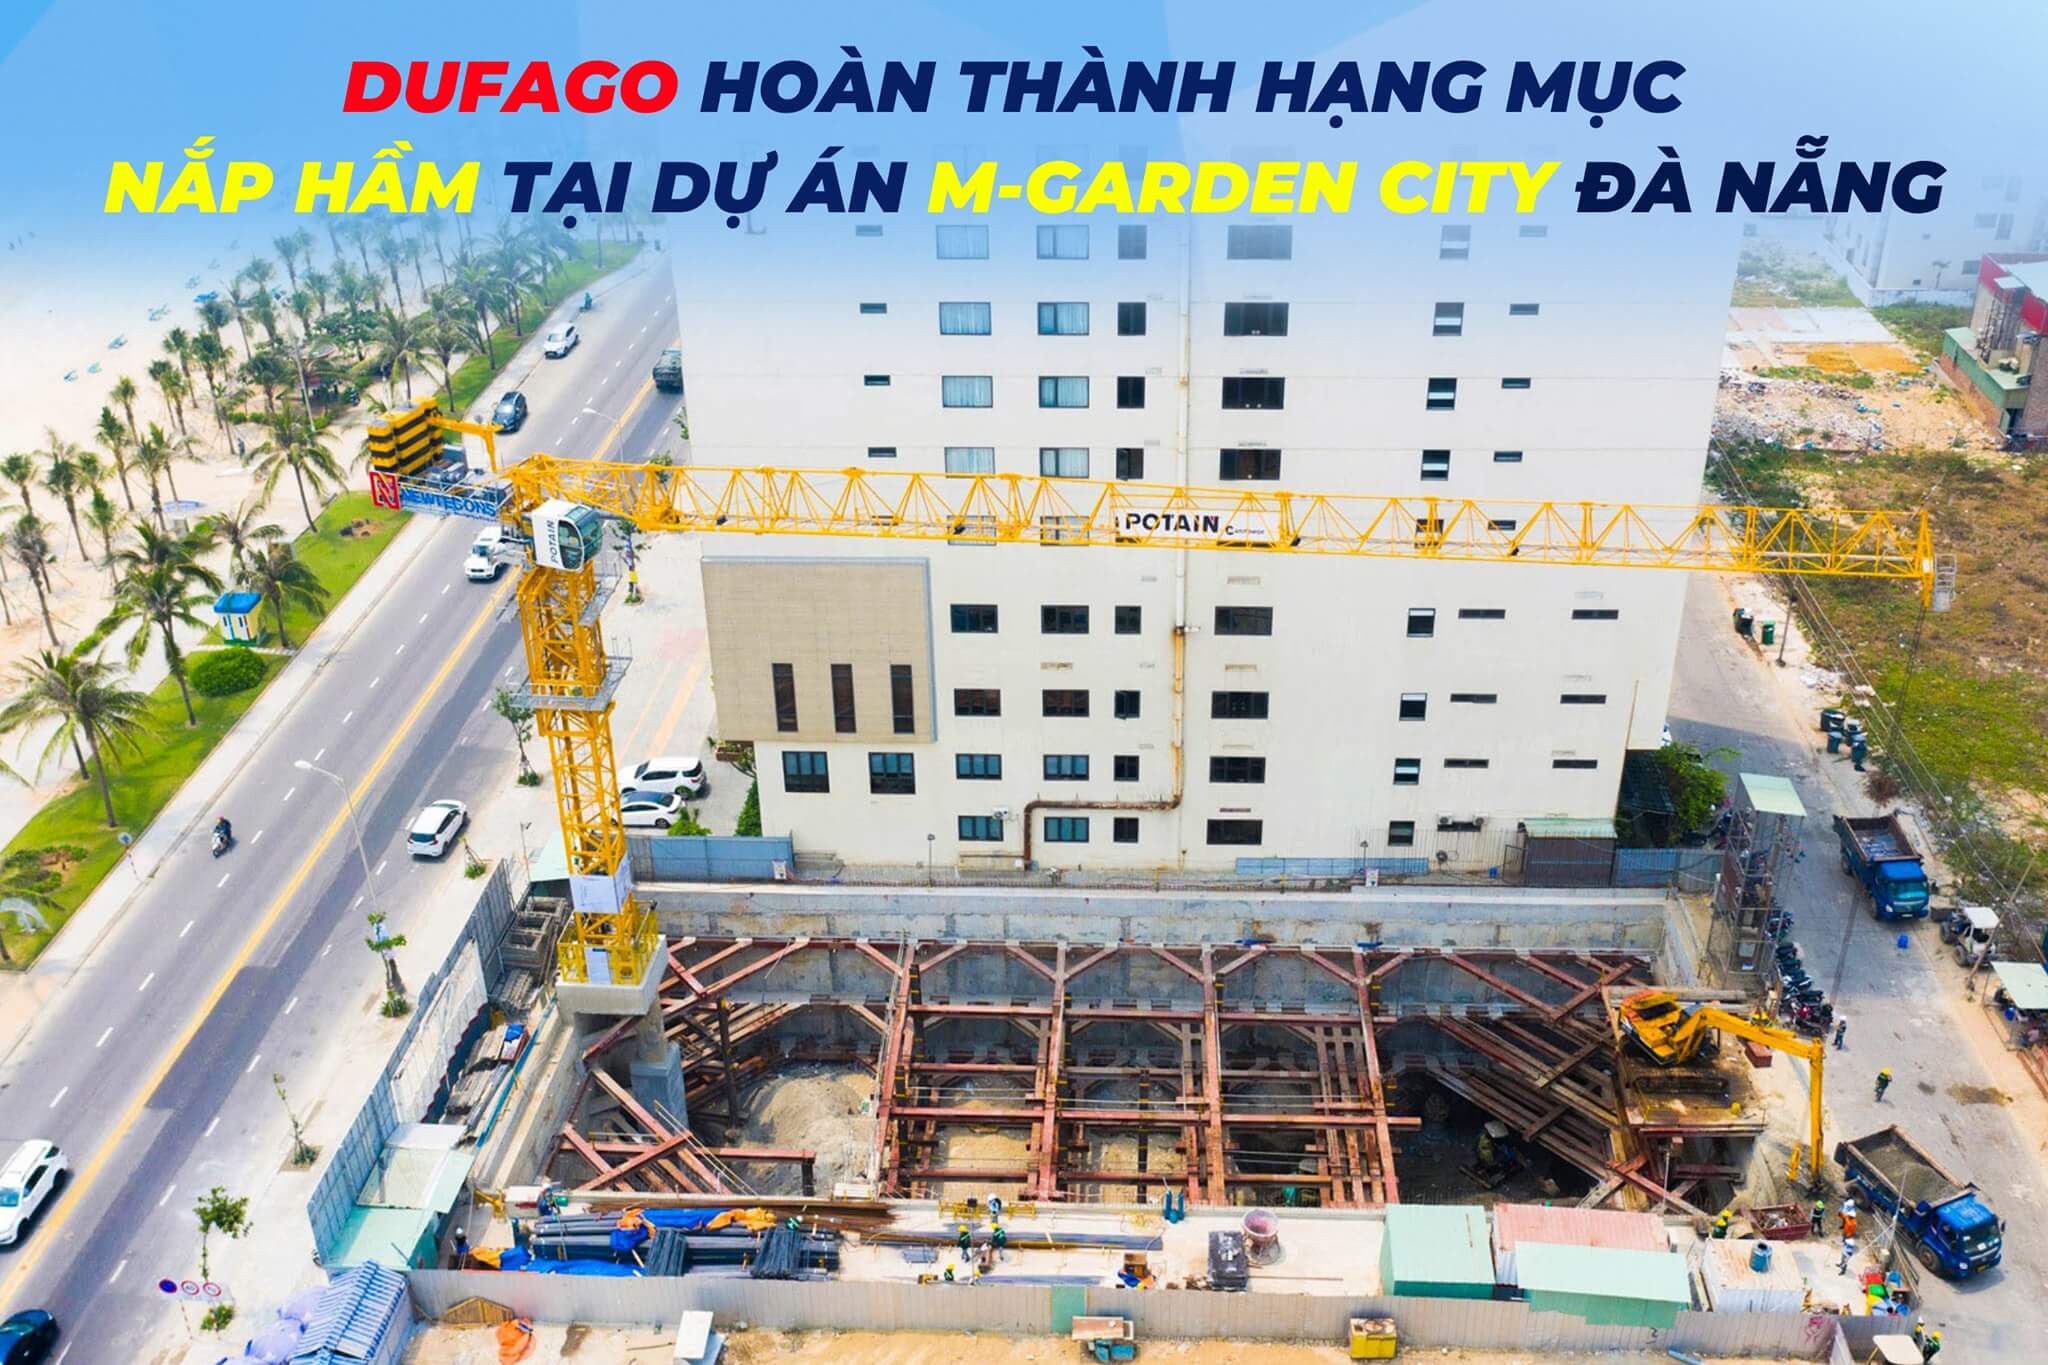 Dufago cung cấp bê tông tại Dự án M-GARDEN CITY Đà Nẵng 